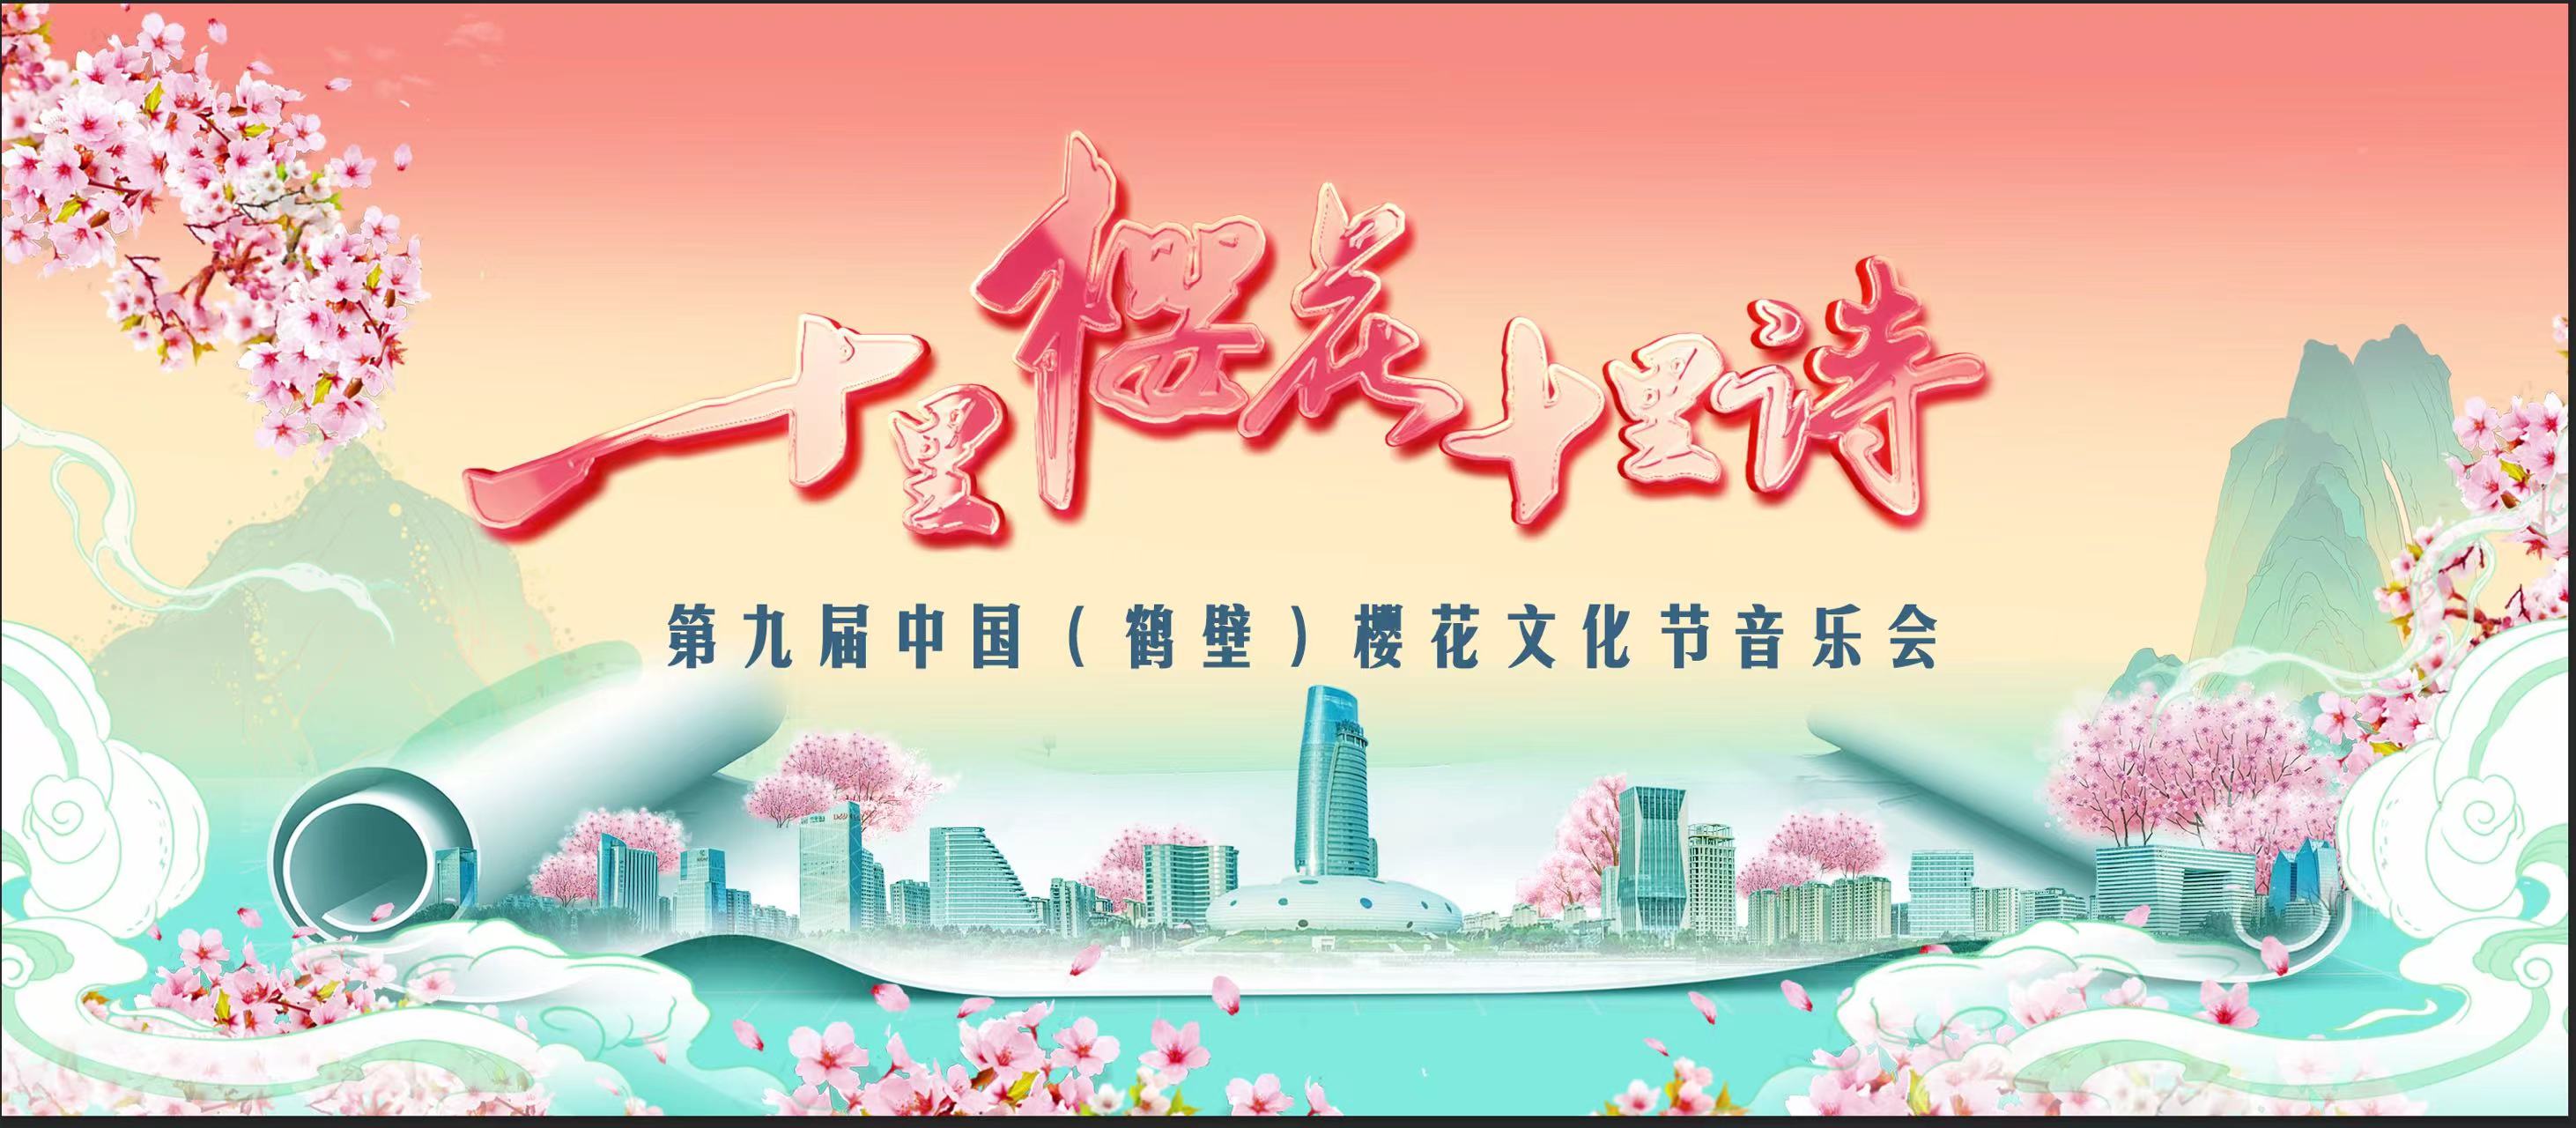 《十里樱花十里诗》第九届中国（鹤壁）樱花文化节音乐会